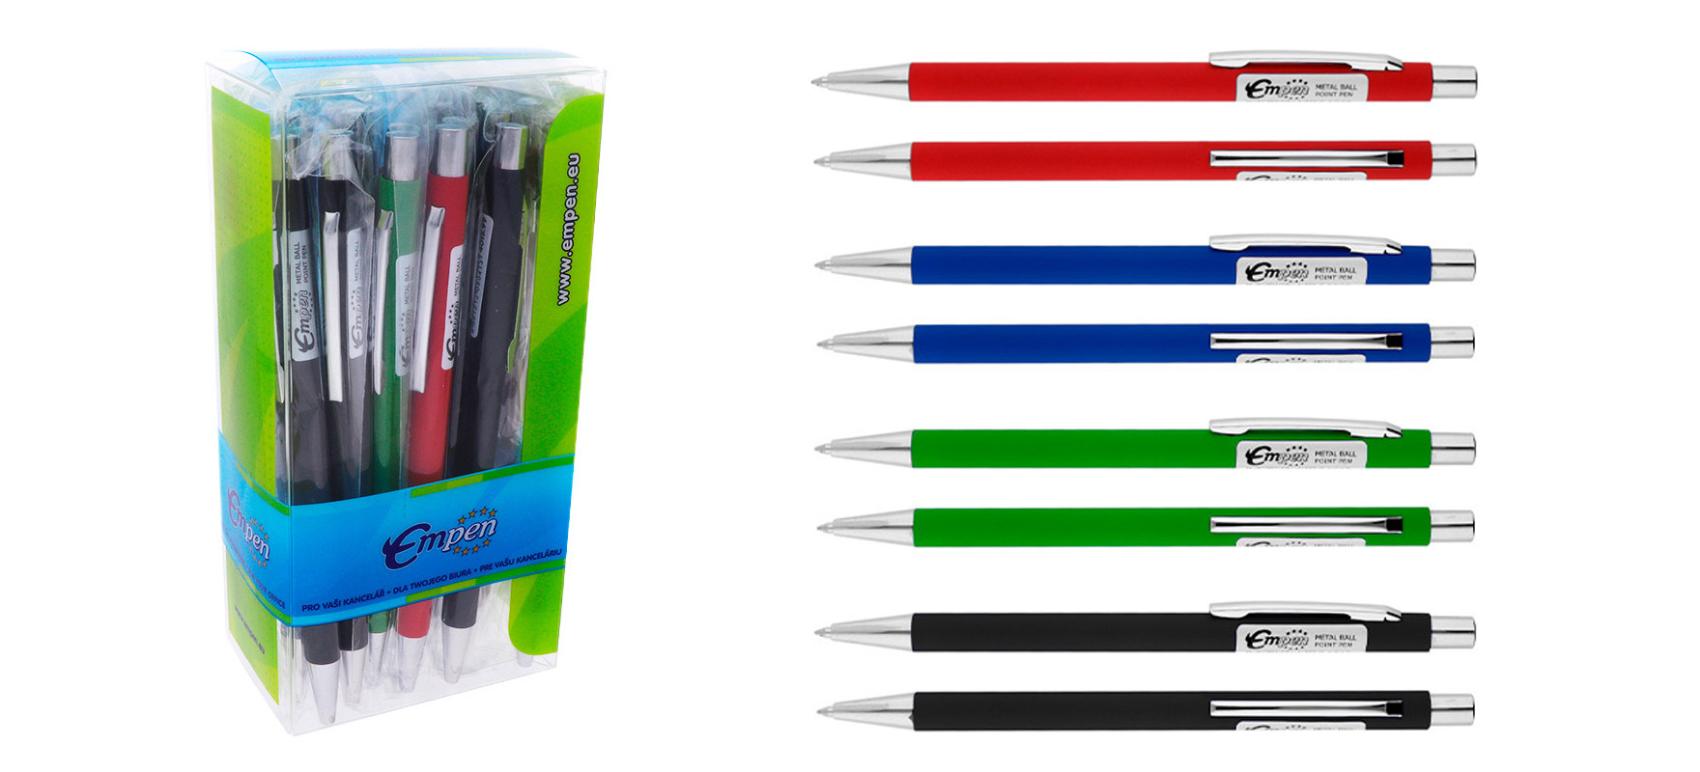 Kulikov pero s pjemnm softovm povrchem mix barev